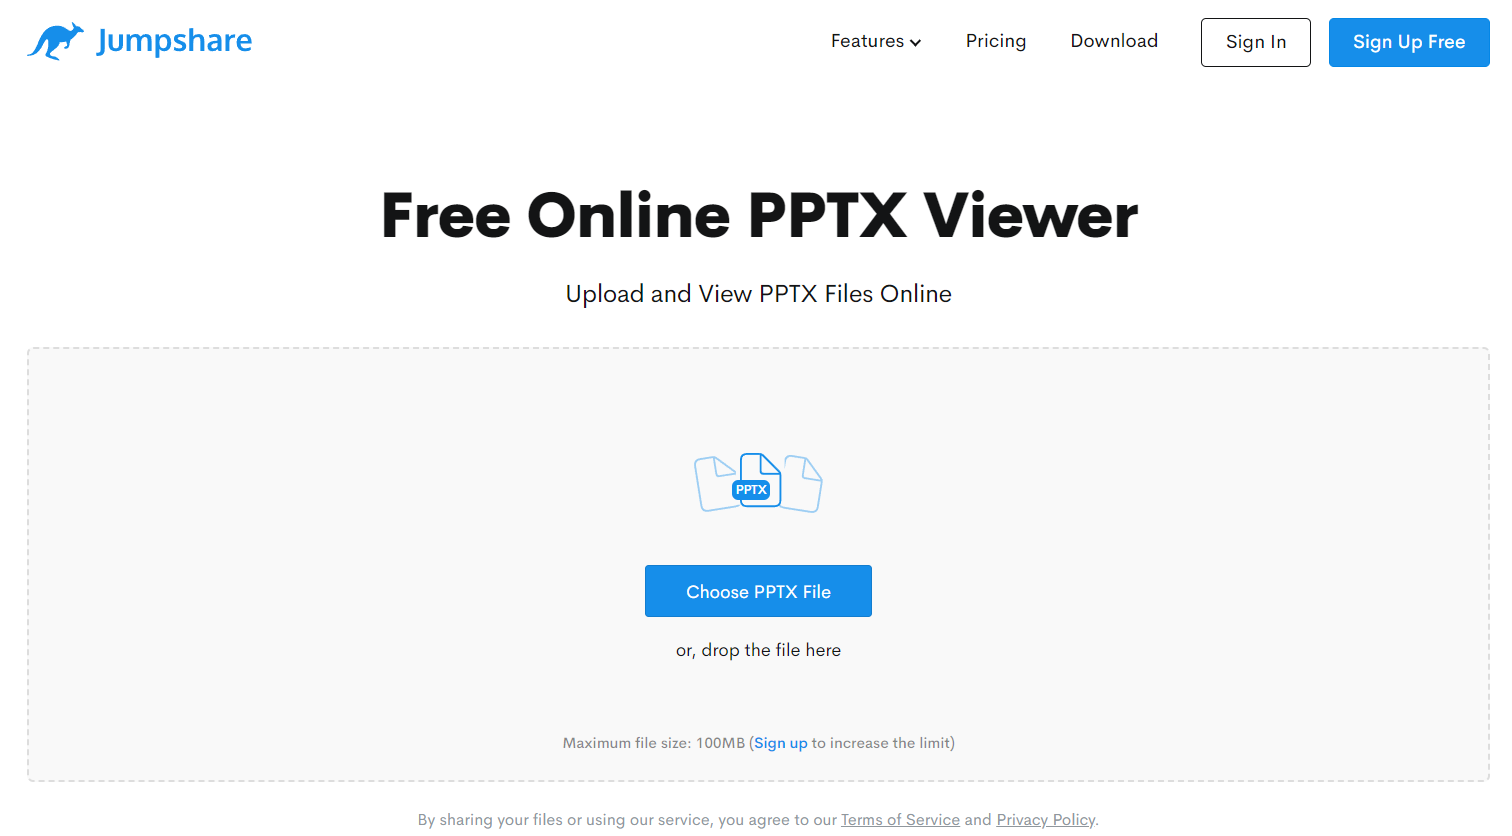 Free Online PPTX Viewer